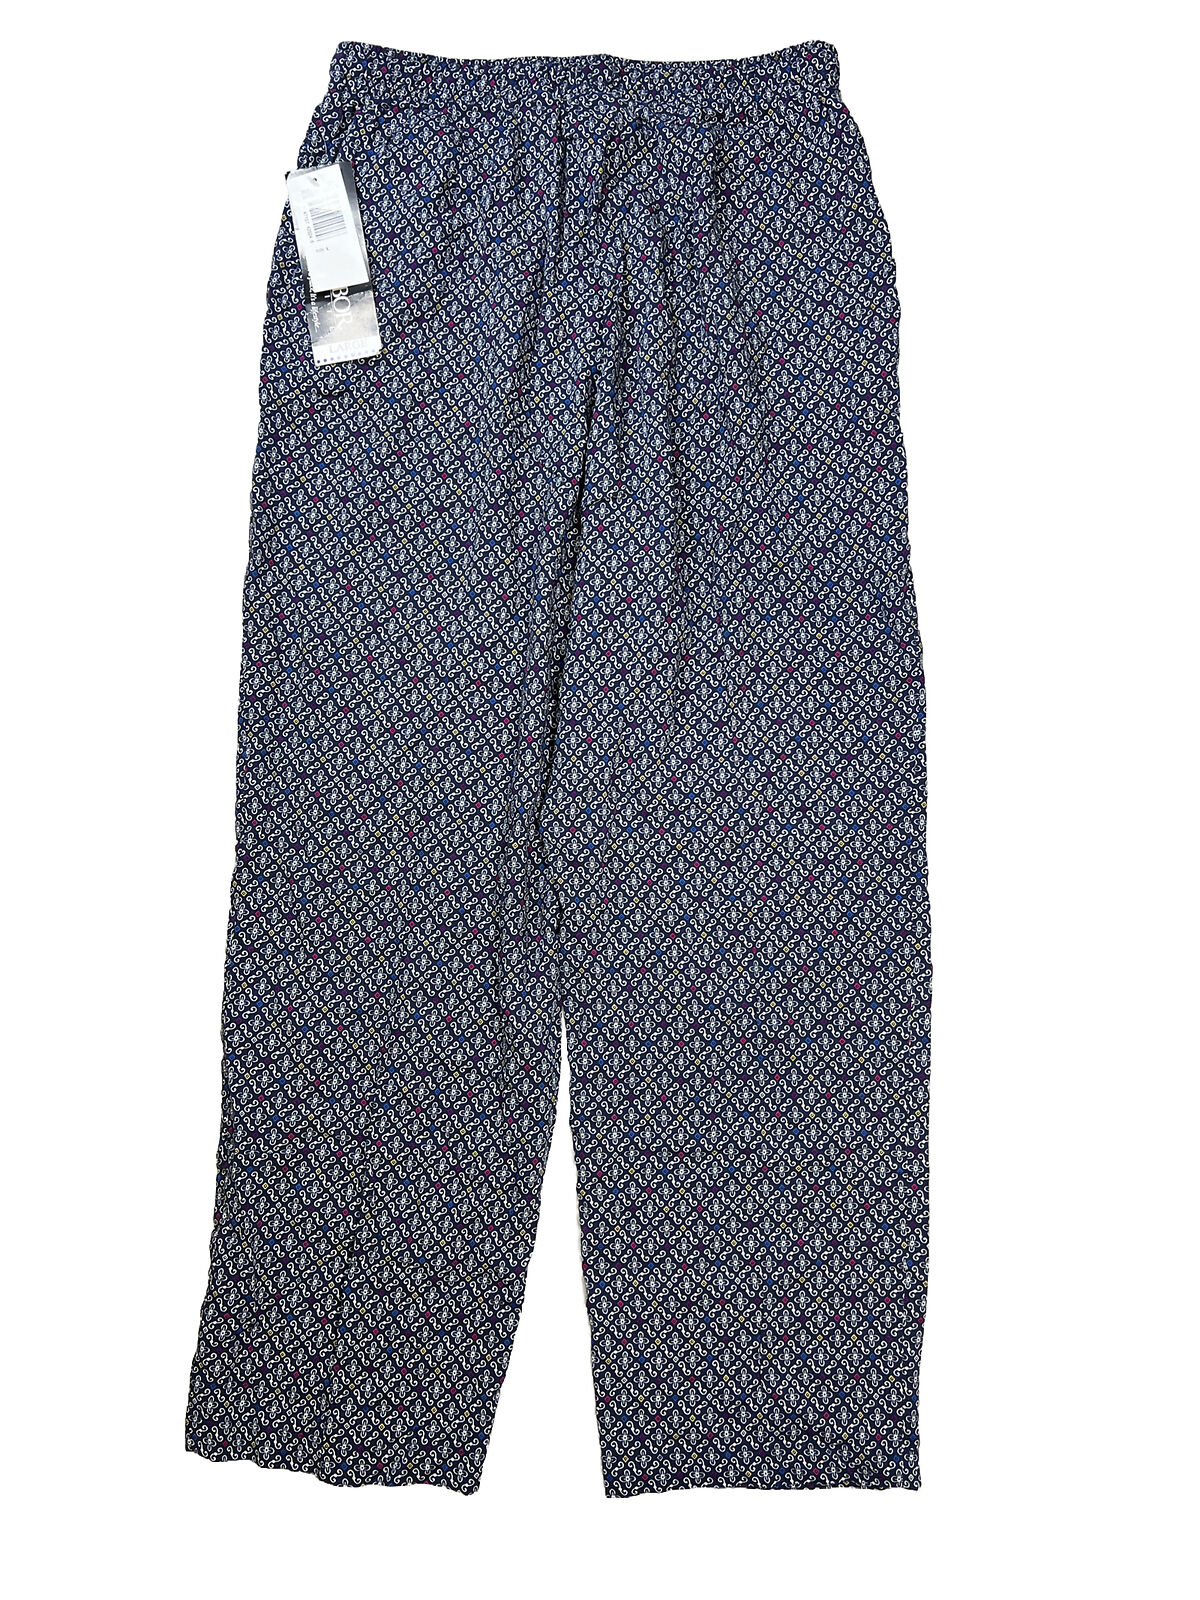 NUEVO Pantalón casual de pierna recta azul de Sag Harbor para mujer - L Petite